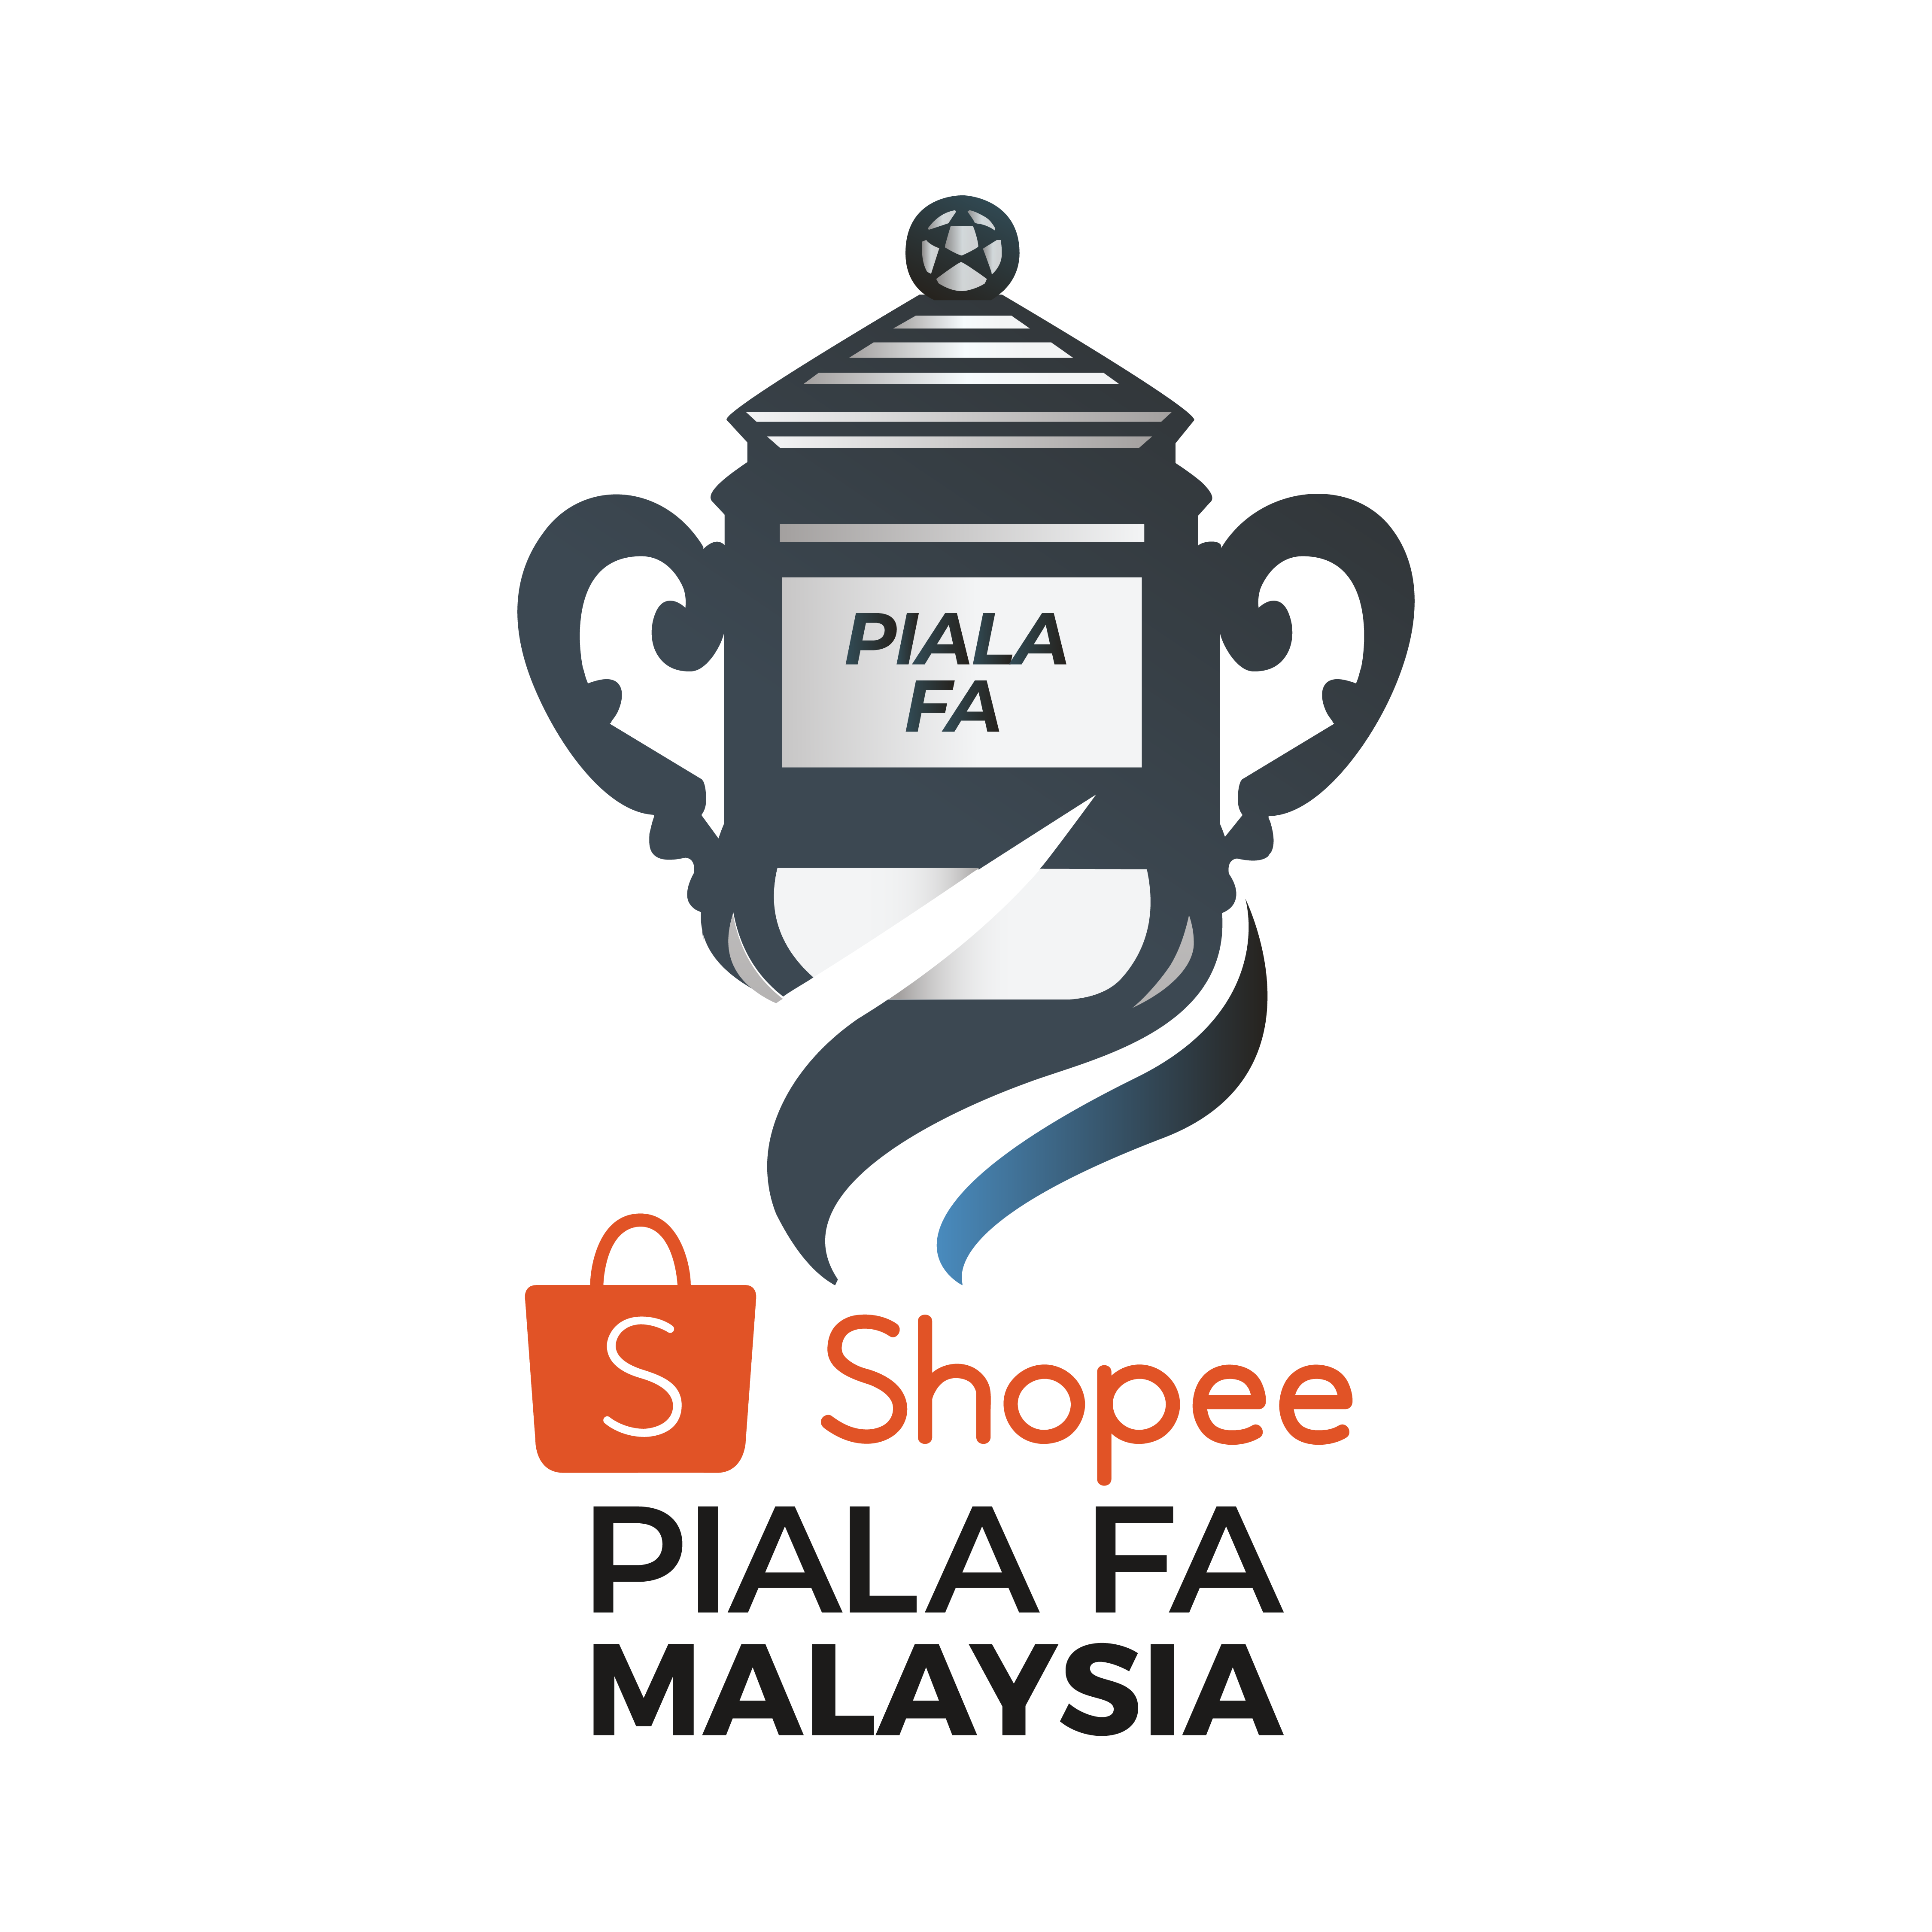 shopee piala fa malaysia logo png #31421